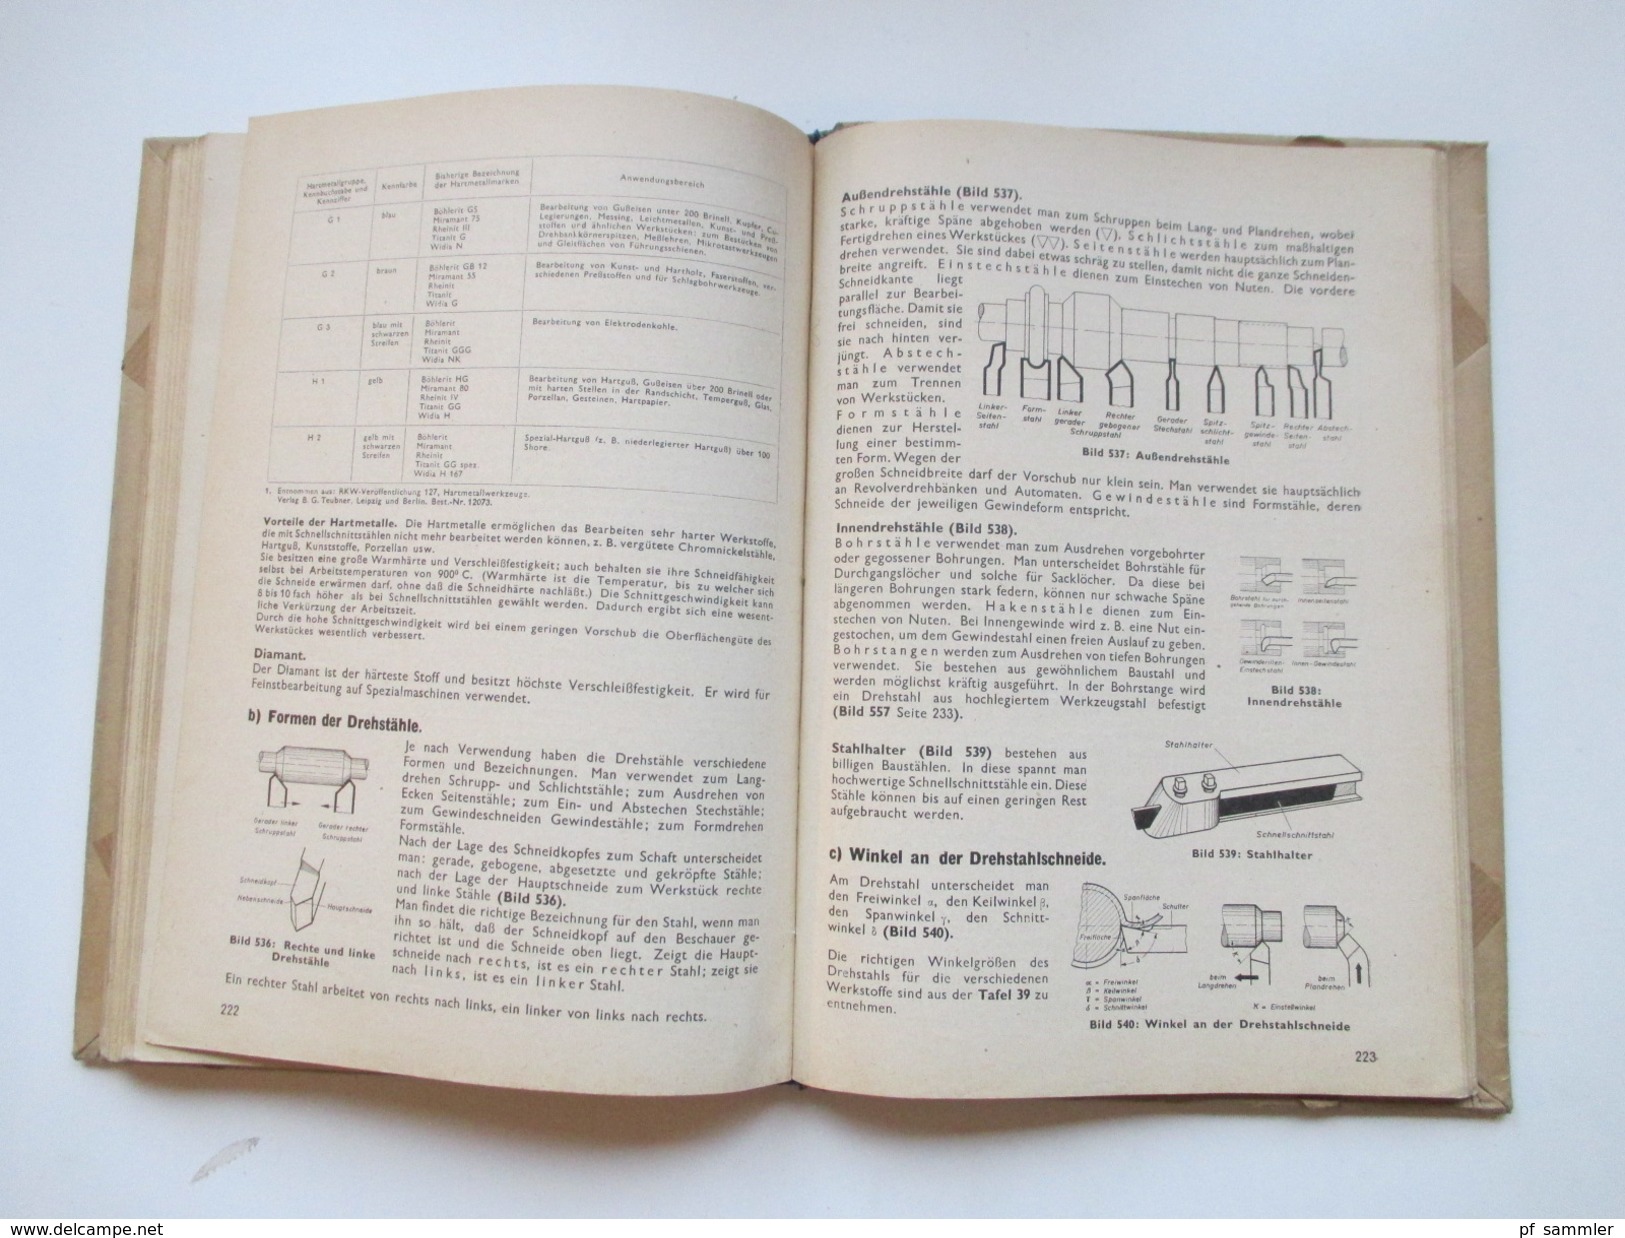 Schulbuch 1949 Fachkunde für metallverarbeitende Berufe. Europa Lehrmittel. Mit vielen Abbildungen! Toll!!